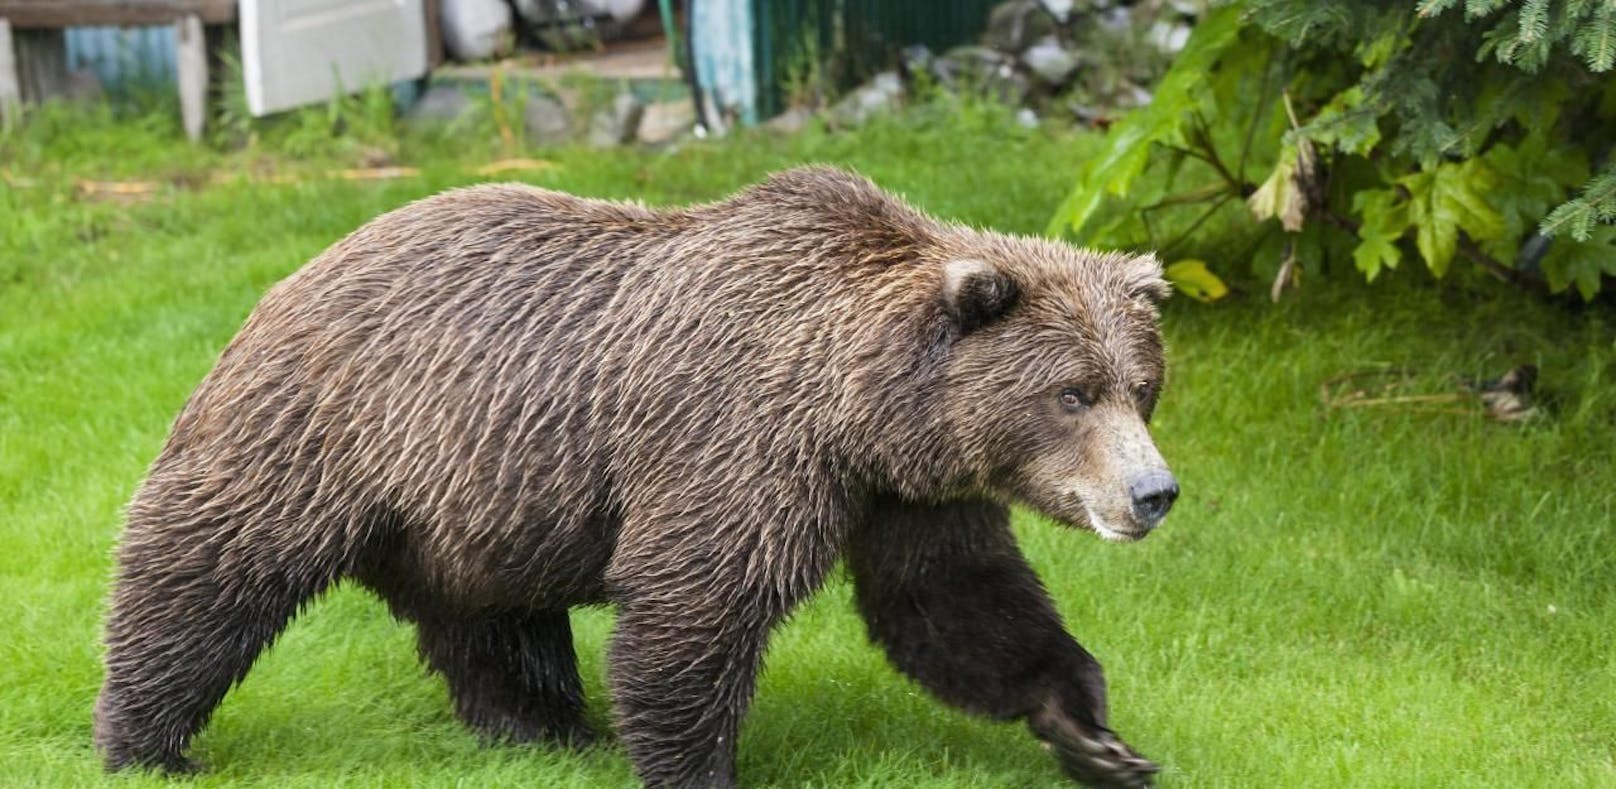 Bär fiel über fünfjähriges Mädchen her